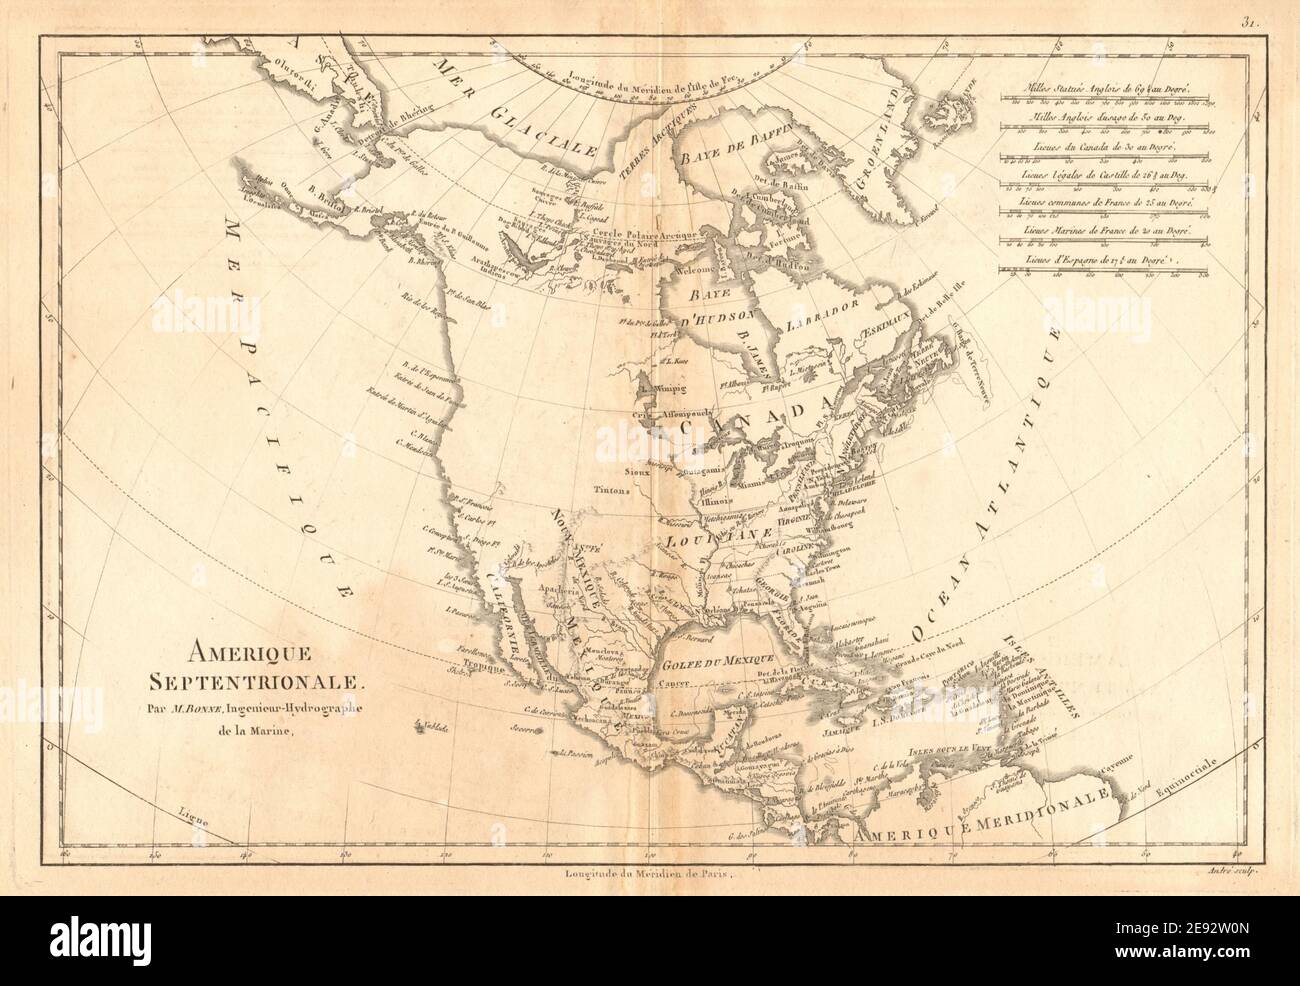 Amerique septentrionale. Mapa antiguo de América del Norte. BONNE 1787 viejo Foto de stock